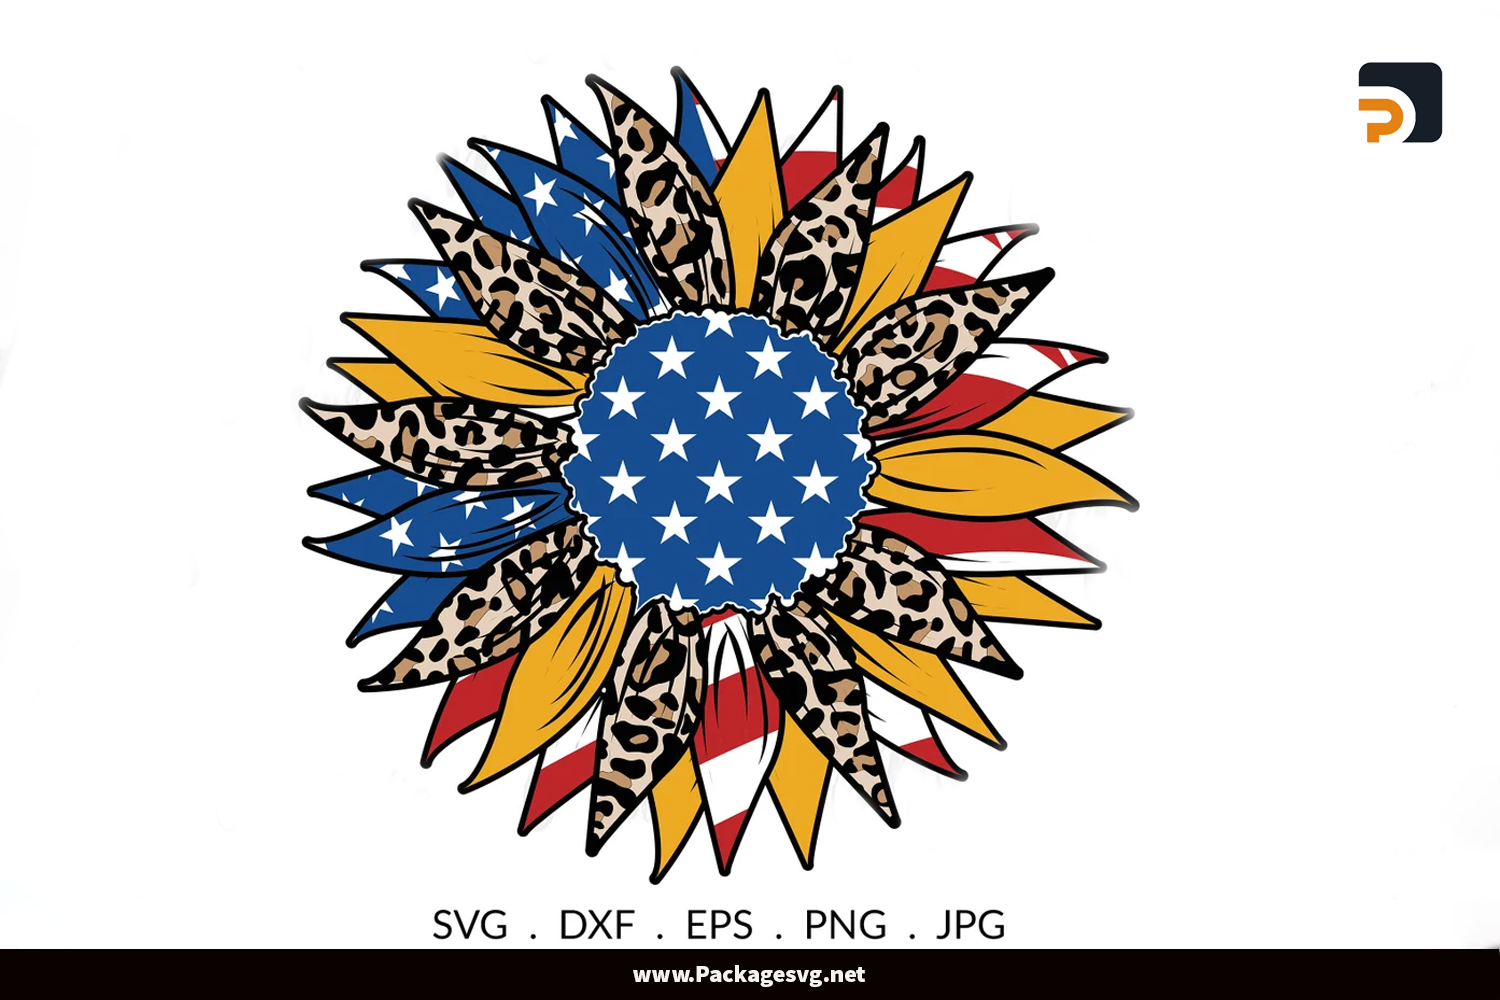 Sunflower Leopard American Flag SVG PNG DXF EPS JPG Digital Download||||||